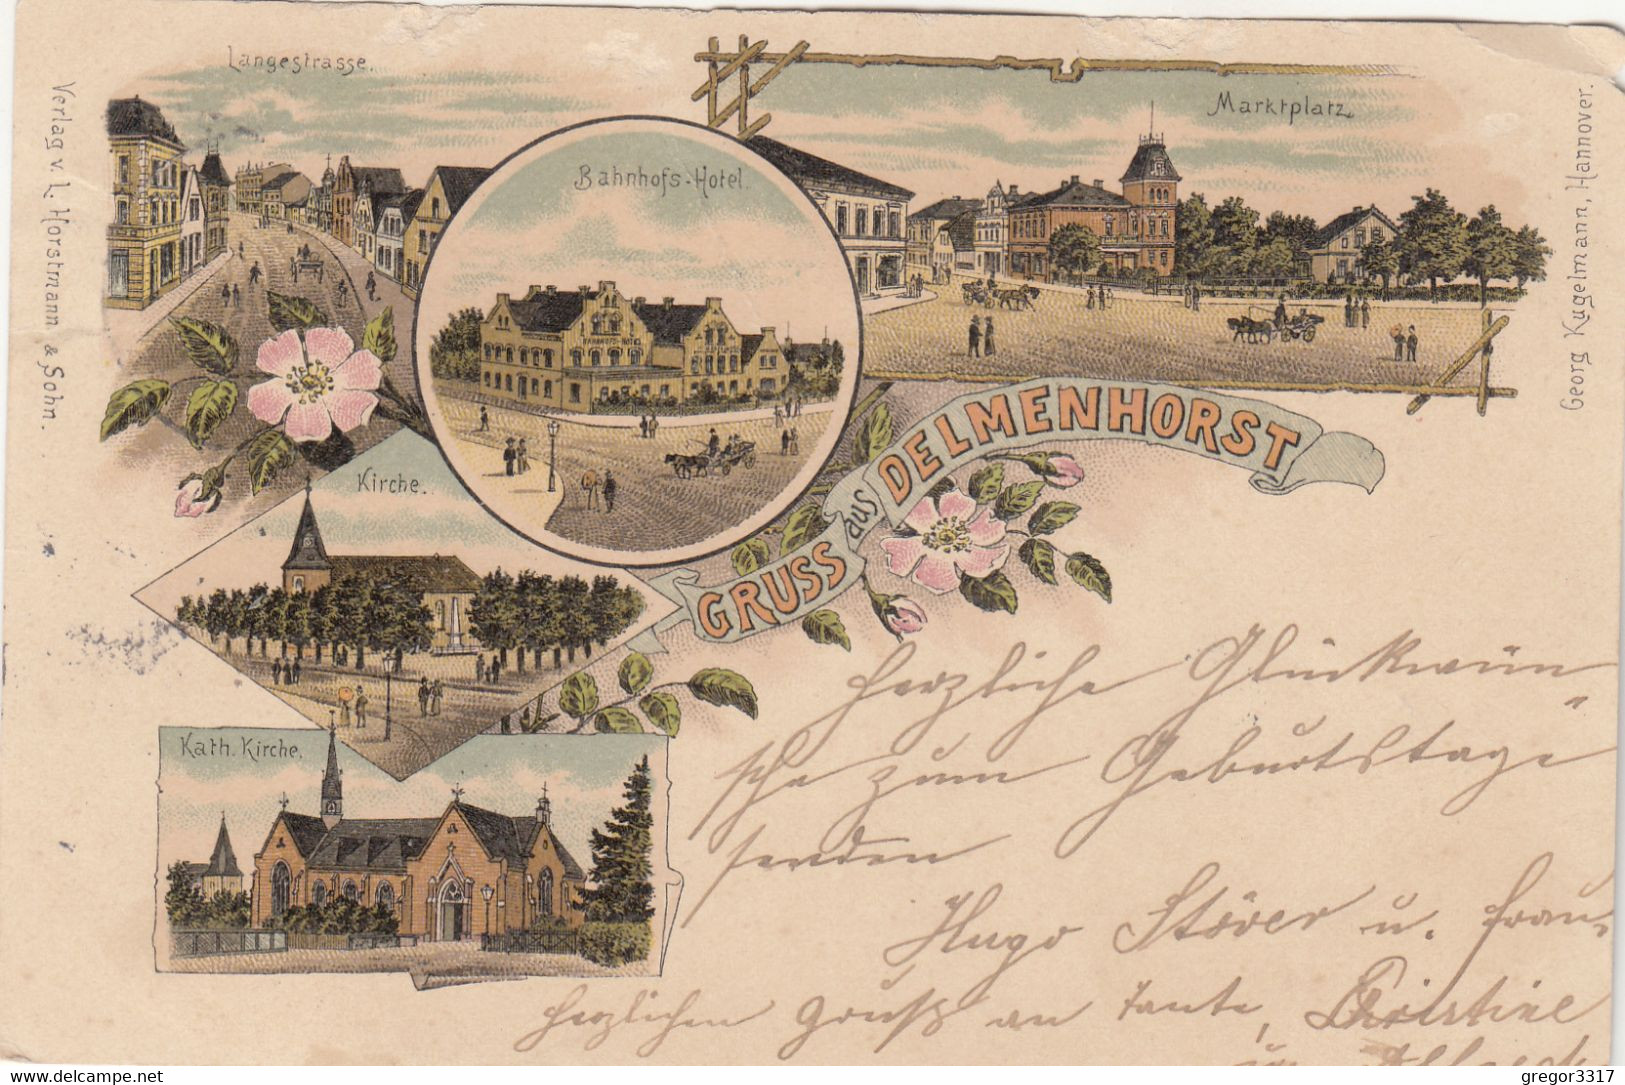 9817) GRUSS Aus DELMENHORST - BAHNHOFSHOTEL - Langestrasse Marktplatz Katz. Kirche - LITHO 1898 - Delmenhorst